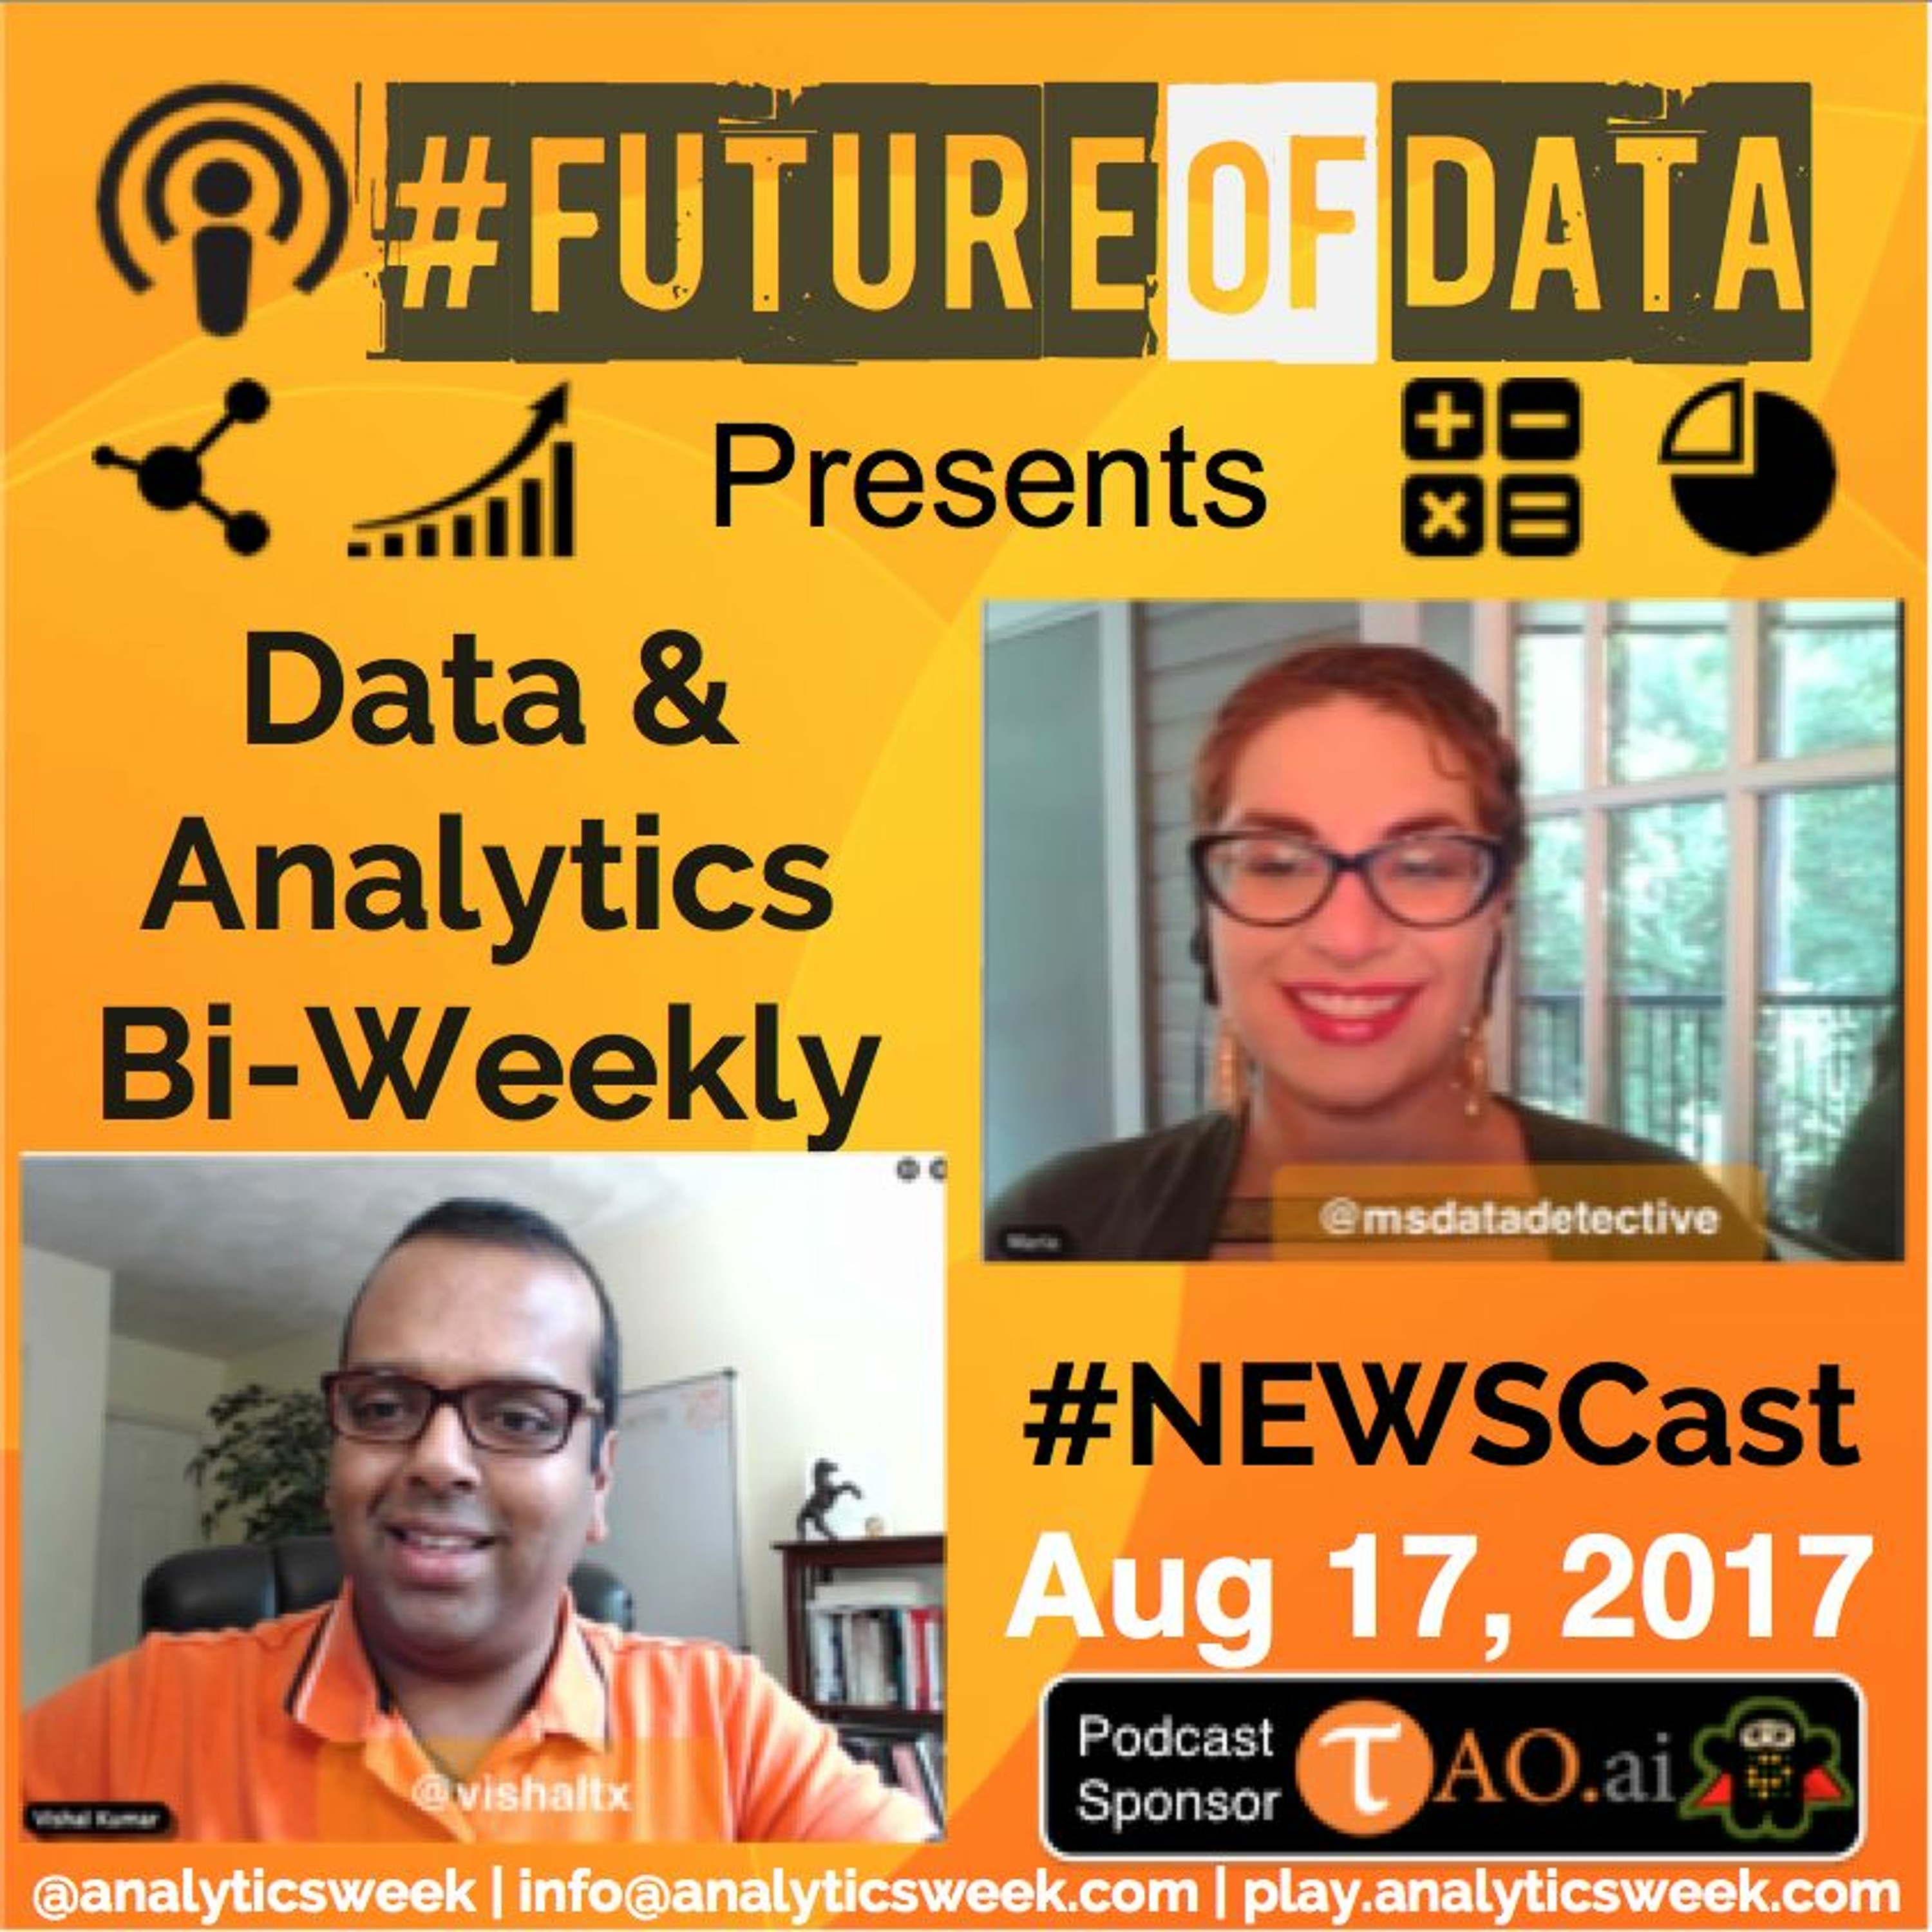 Data & Analytics Bi-Weekly Newsletter Cast Aug 17, 2017